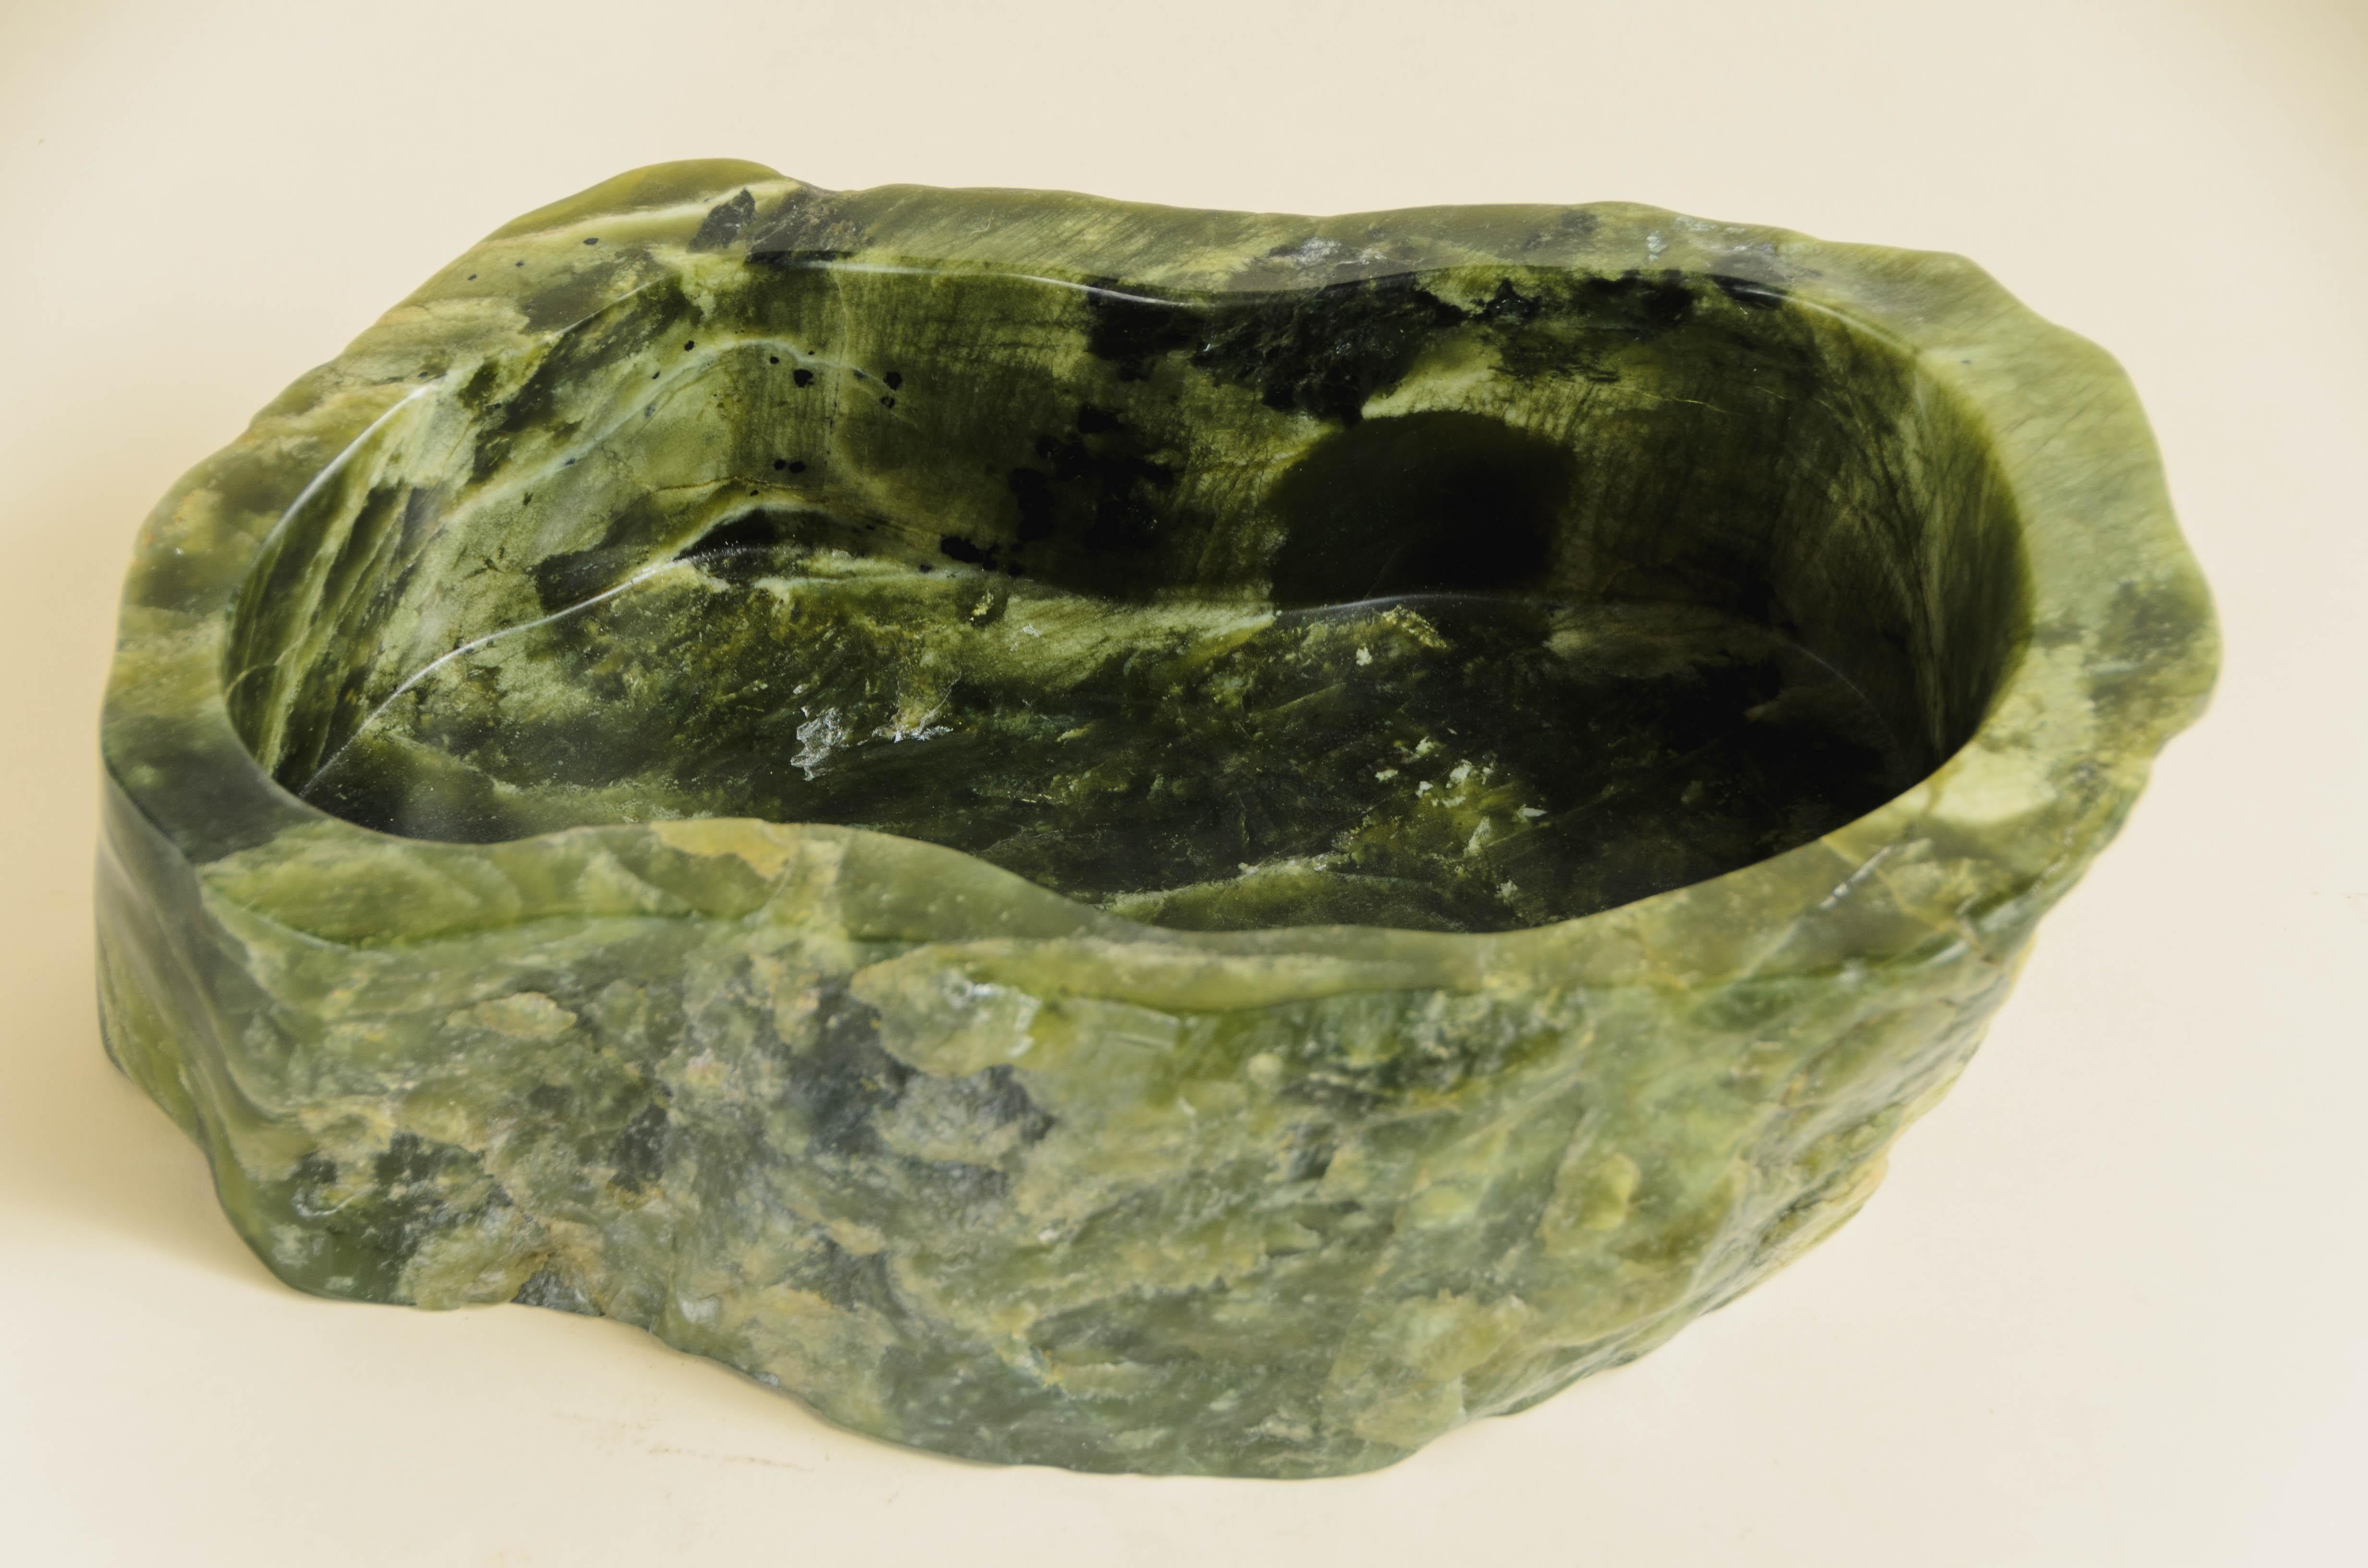 Cache-pot oblong
Jade néphrite
Sculpté à la main
Édition limitée
Contemporain

Veuillez noter que la forme et la couleur de chaque jade varient.

Connue sous le nom de « pierre du ciel », la jade néphrite est prisée pour sa beauté esthétique